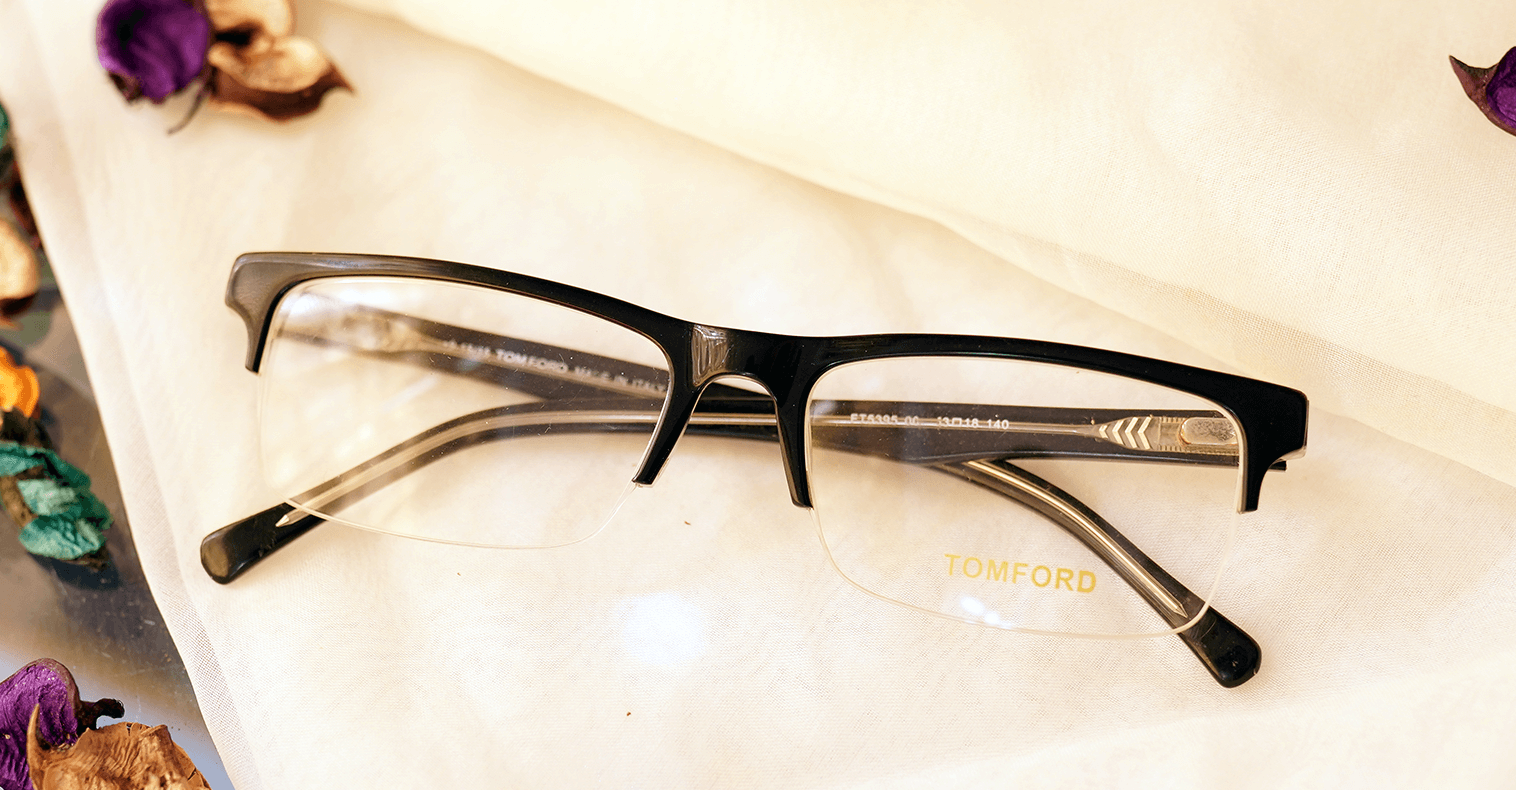 Bolan Glasses - Buy Online Glasses & Sunglasses